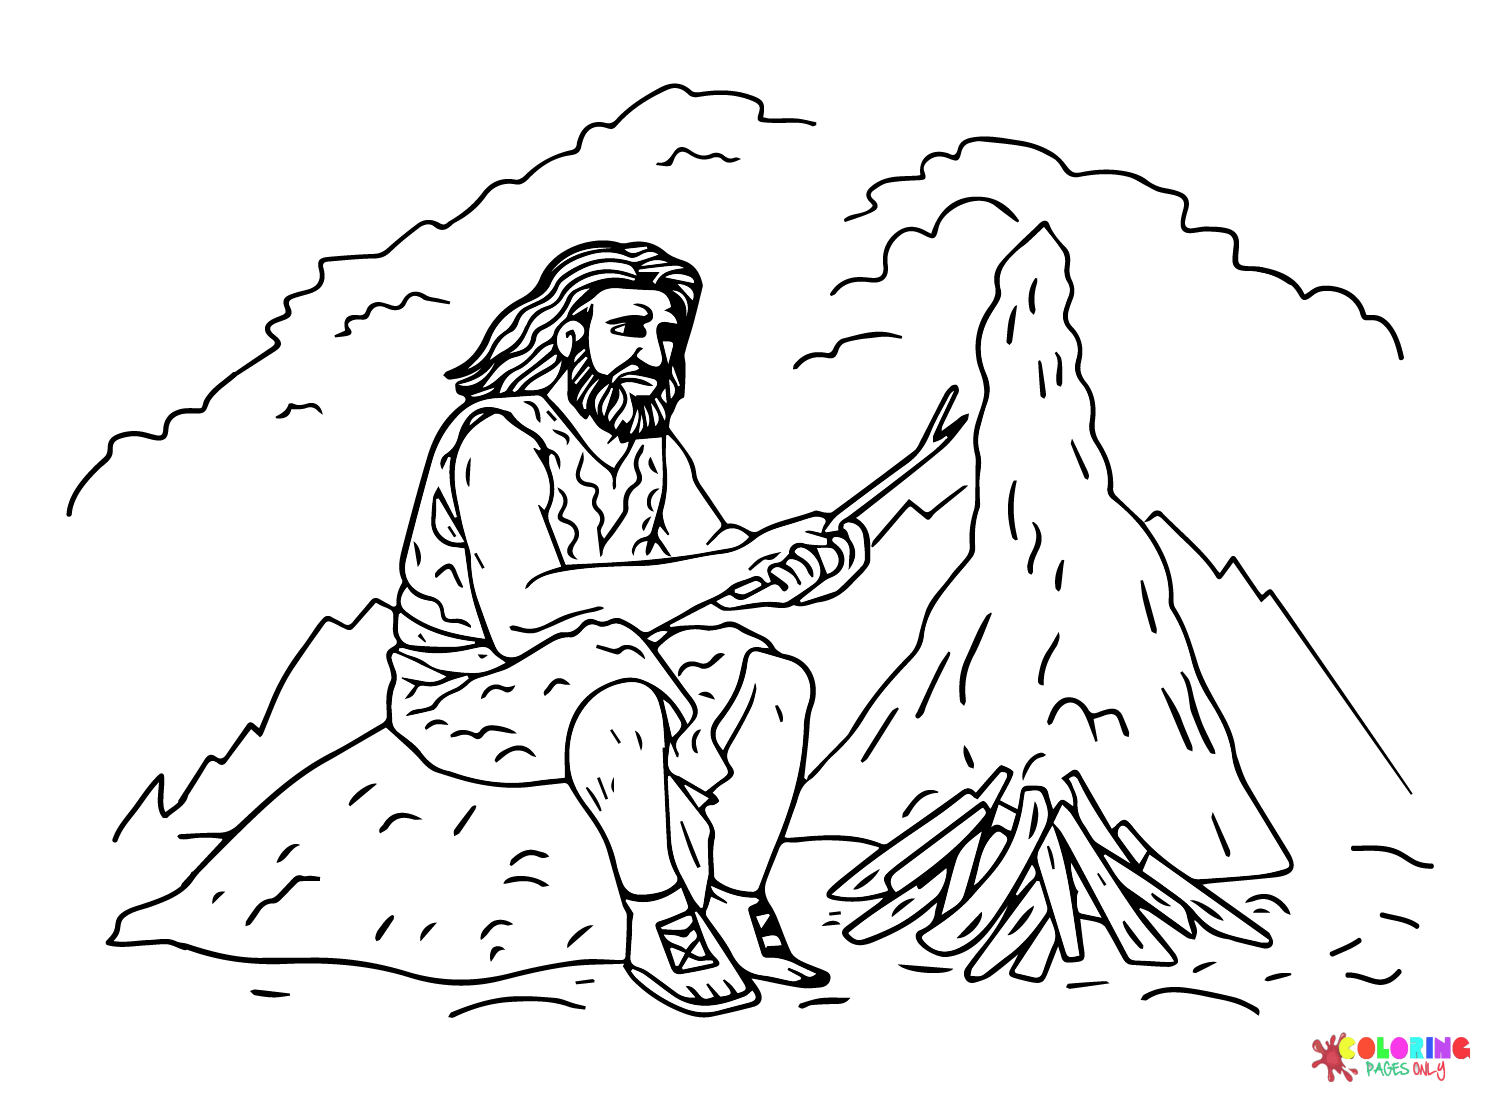 Hombre prehistórico encendiendo un fuego desde la Prehistoria